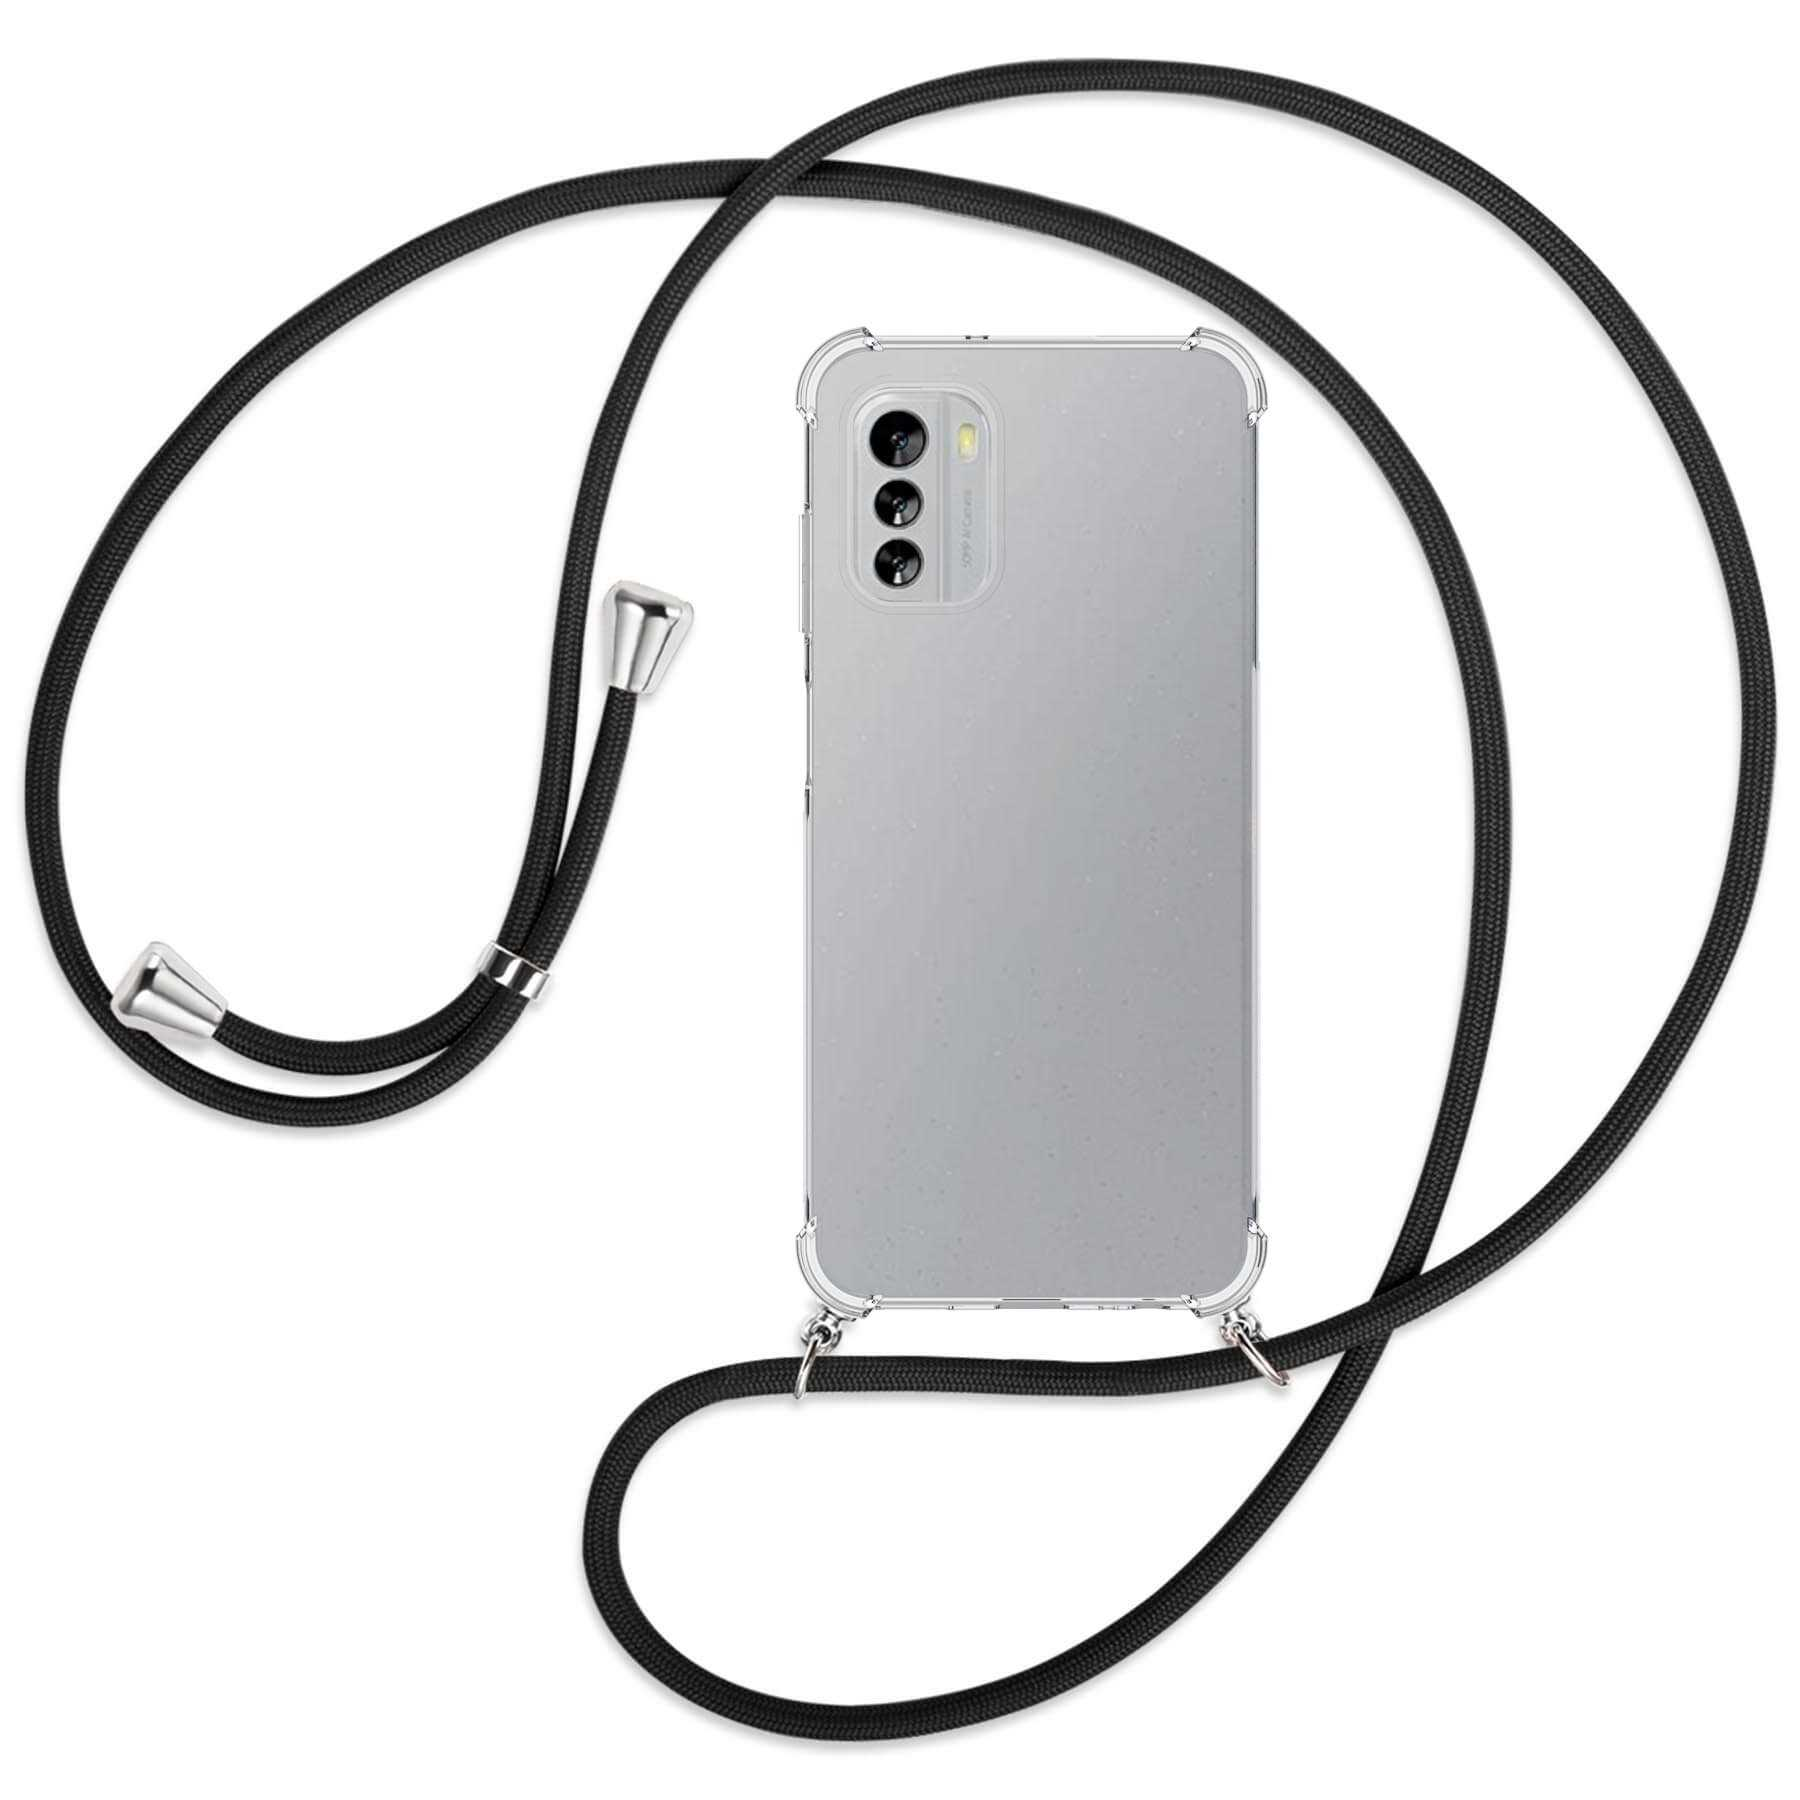 Schwarz mit MTB / MORE 5G, G60 Backcover, Umhänge-Hülle Nokia, silber Kordel, ENERGY